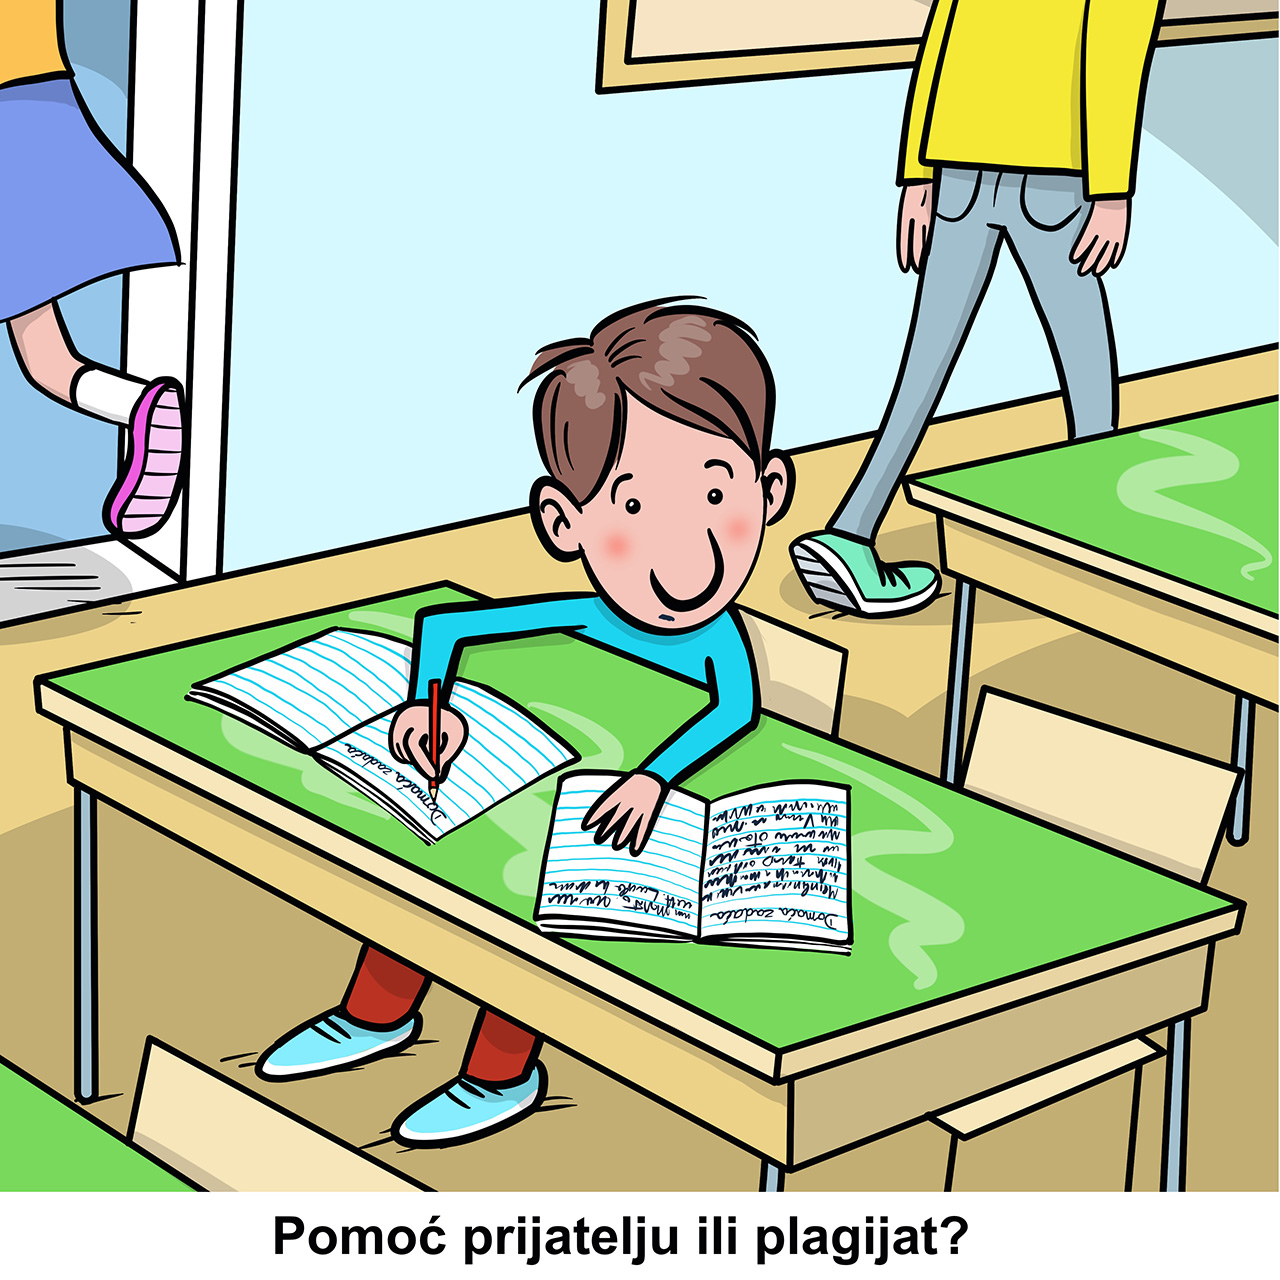 Učenik prije početka sata prepisuje zadaću iz bilježnice svojega prijatelja. Je li to pomoć prijatelju ili plagijat?